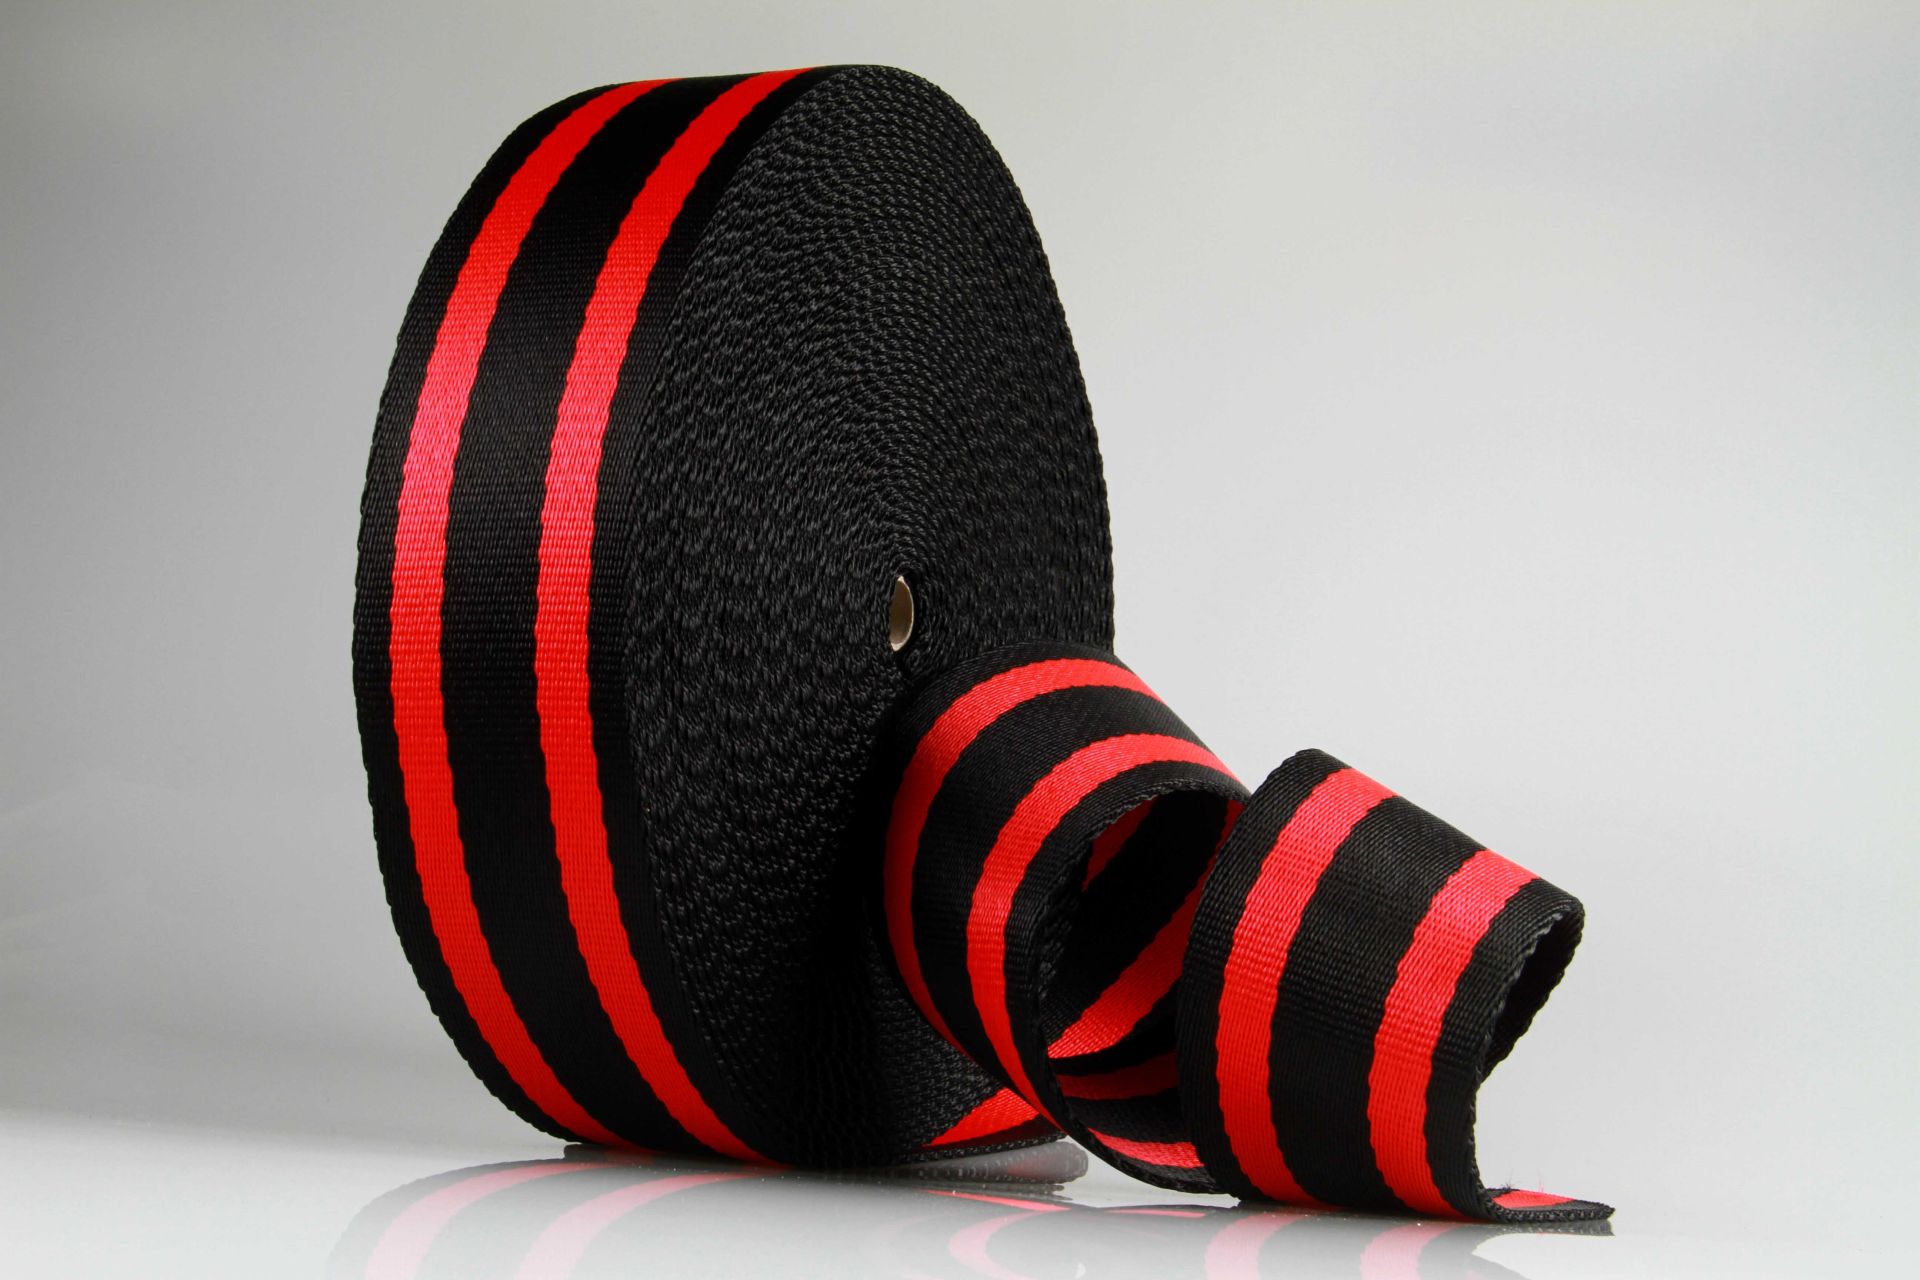 Dicke Gurtware aus PP  -  Meterware  -  85 mm Breite  -  Hochfest und SEHR Robust  -  Schwarz mit roten Streifen